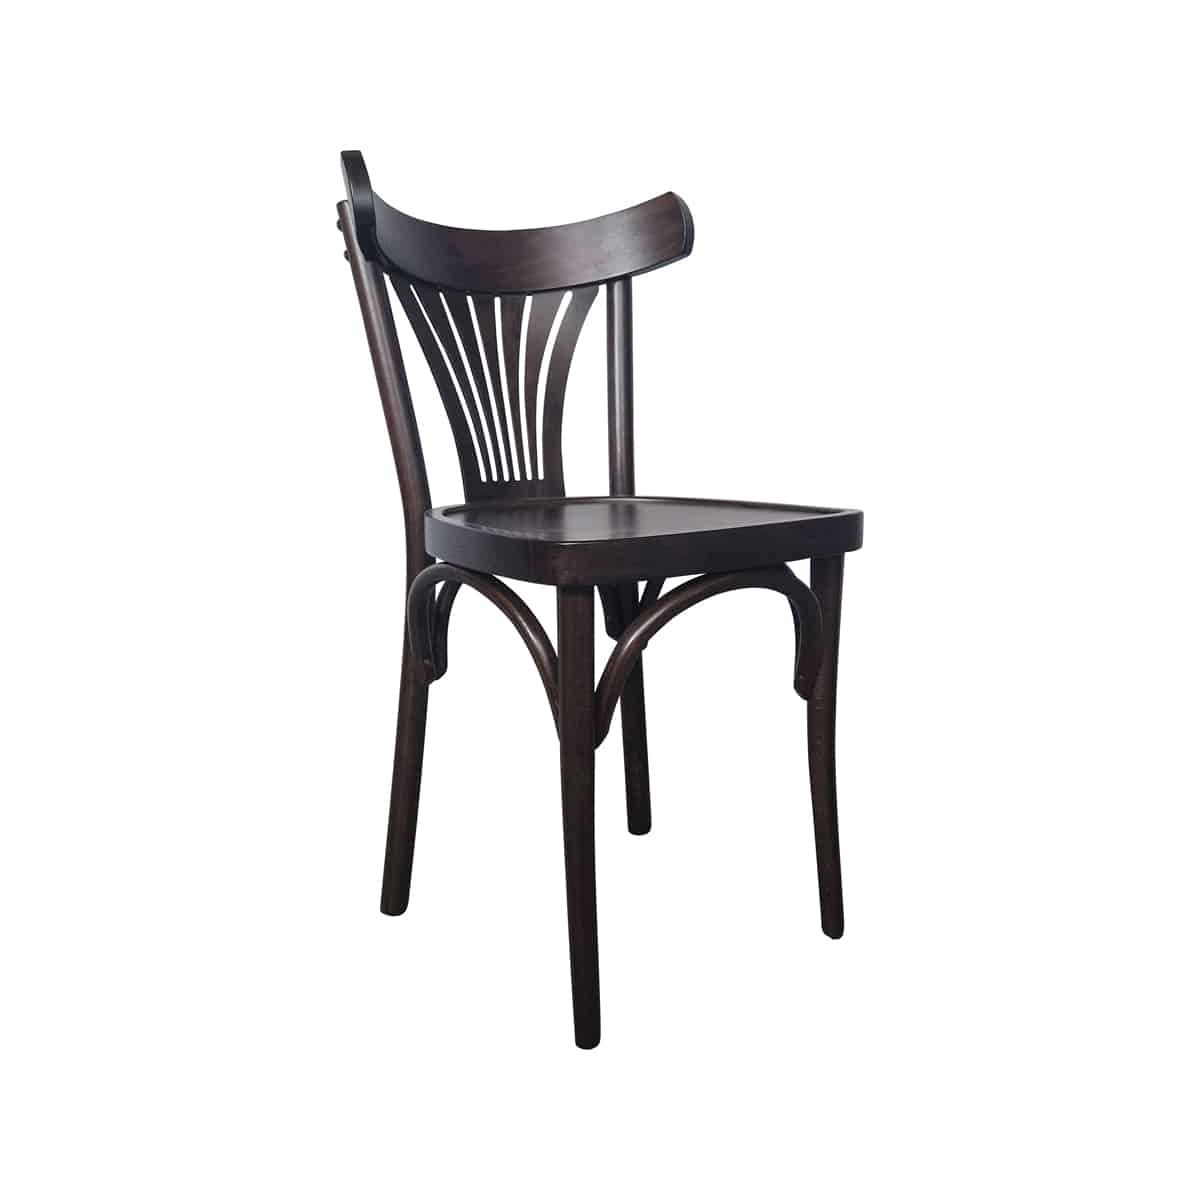 Onderhoudbaar Onverbiddelijk Asser Thonet bentwood café stoelen oud bruin waaier - Super Seat